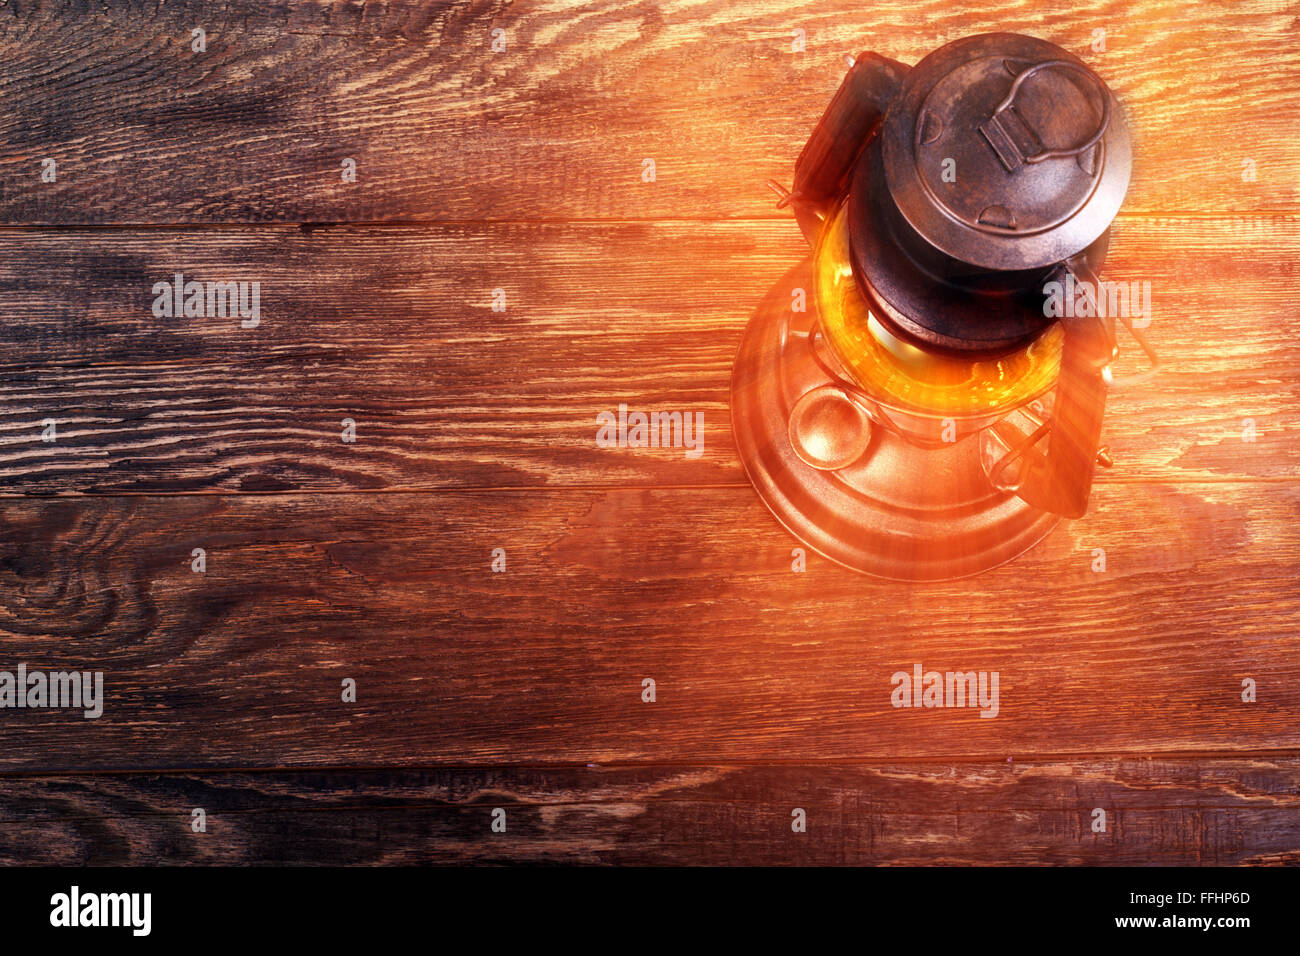 Old rusty kérosène lanterne sur le plancher en bois structuré Banque D'Images